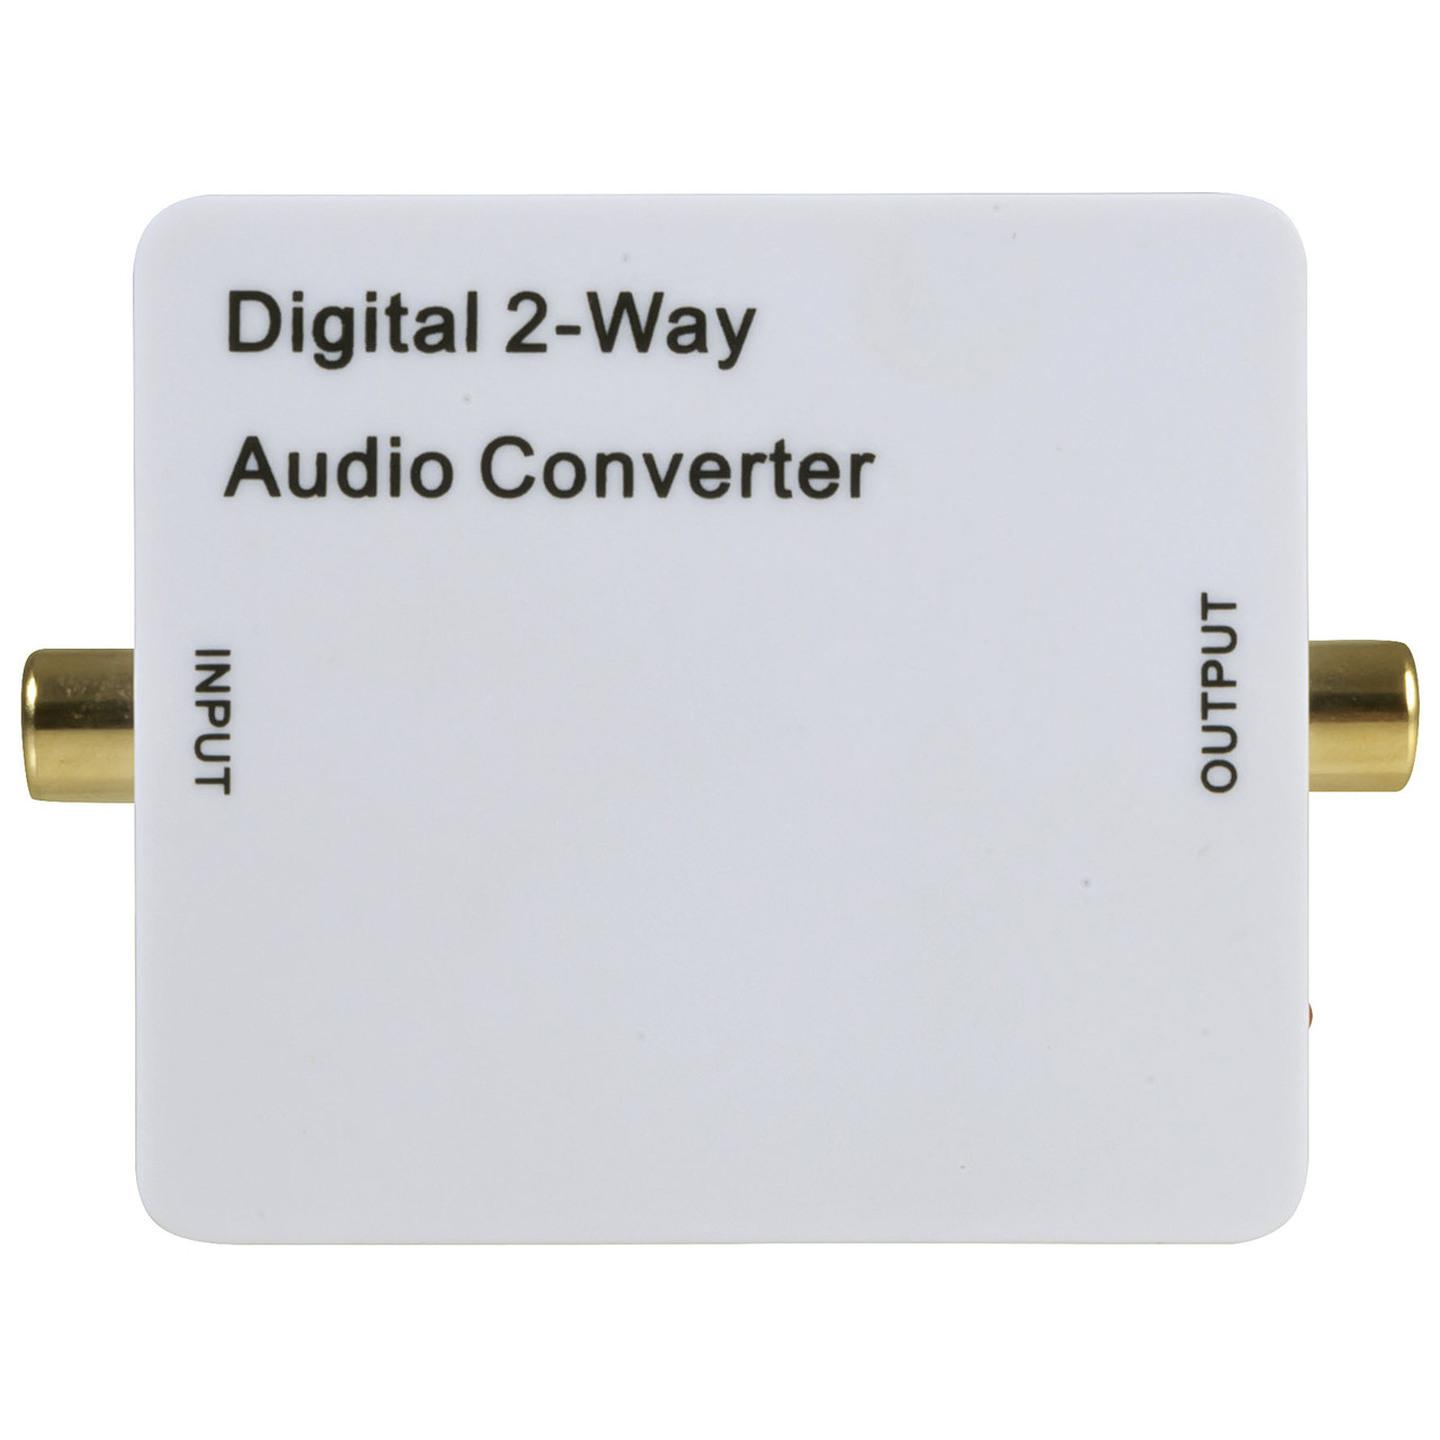 Digital Audio Converter & Repeater